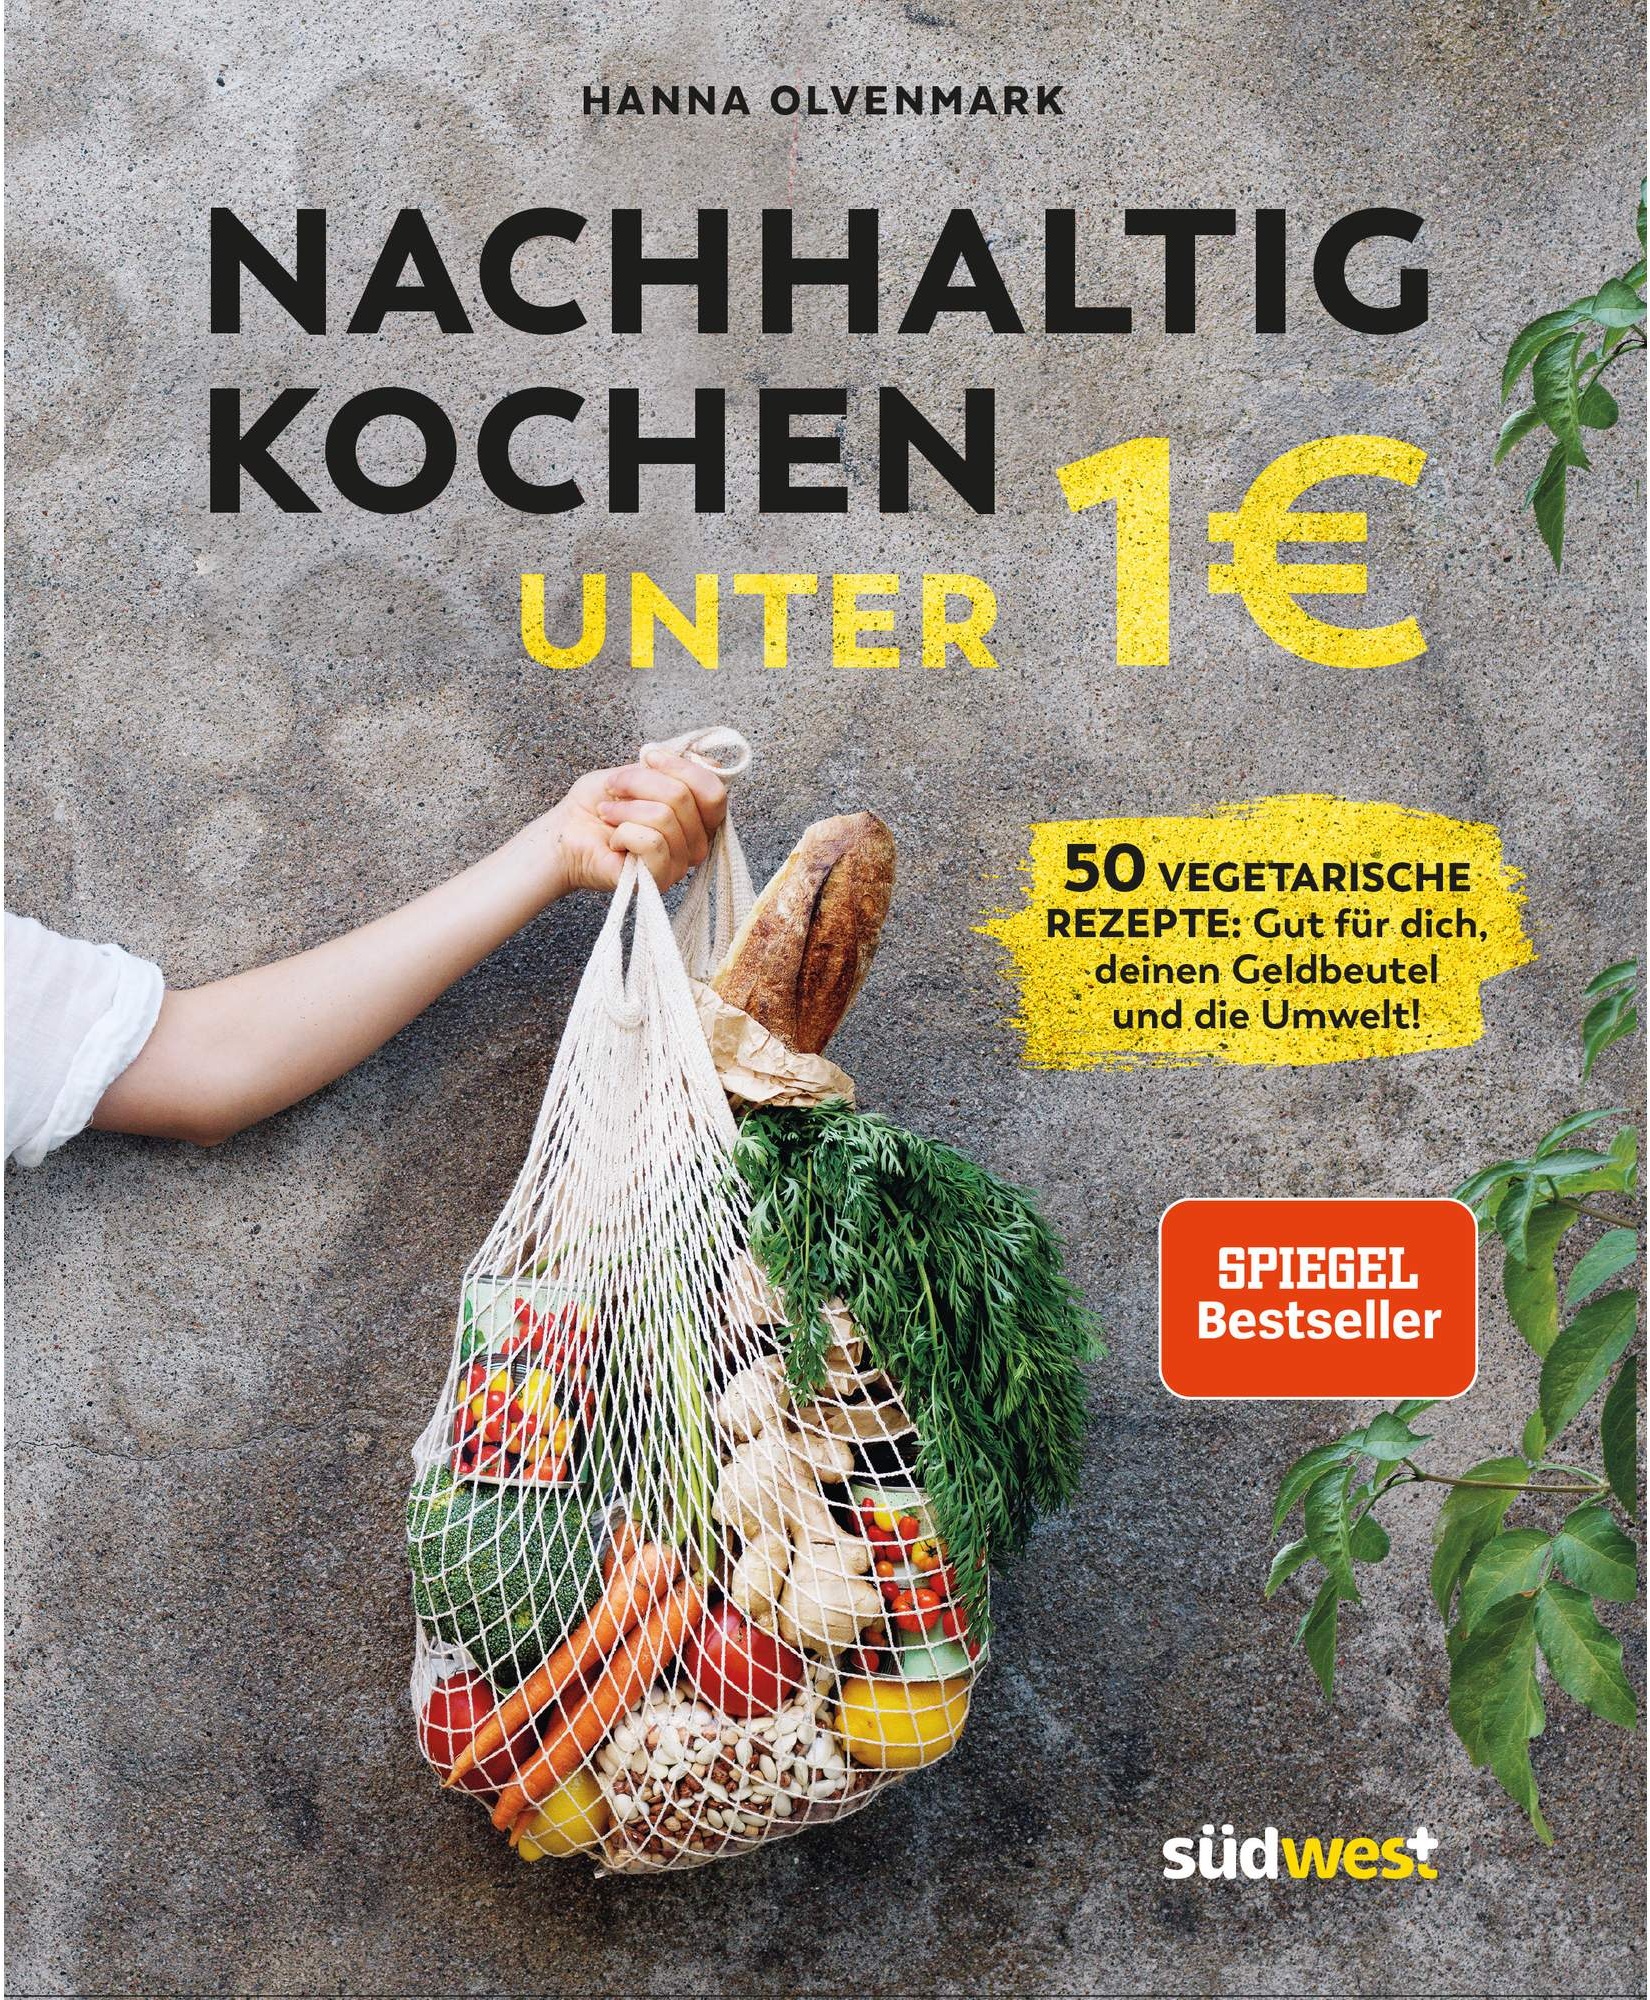 NACHHALTIG KOCHEN UNTER 1 EURO -  Kochbücher